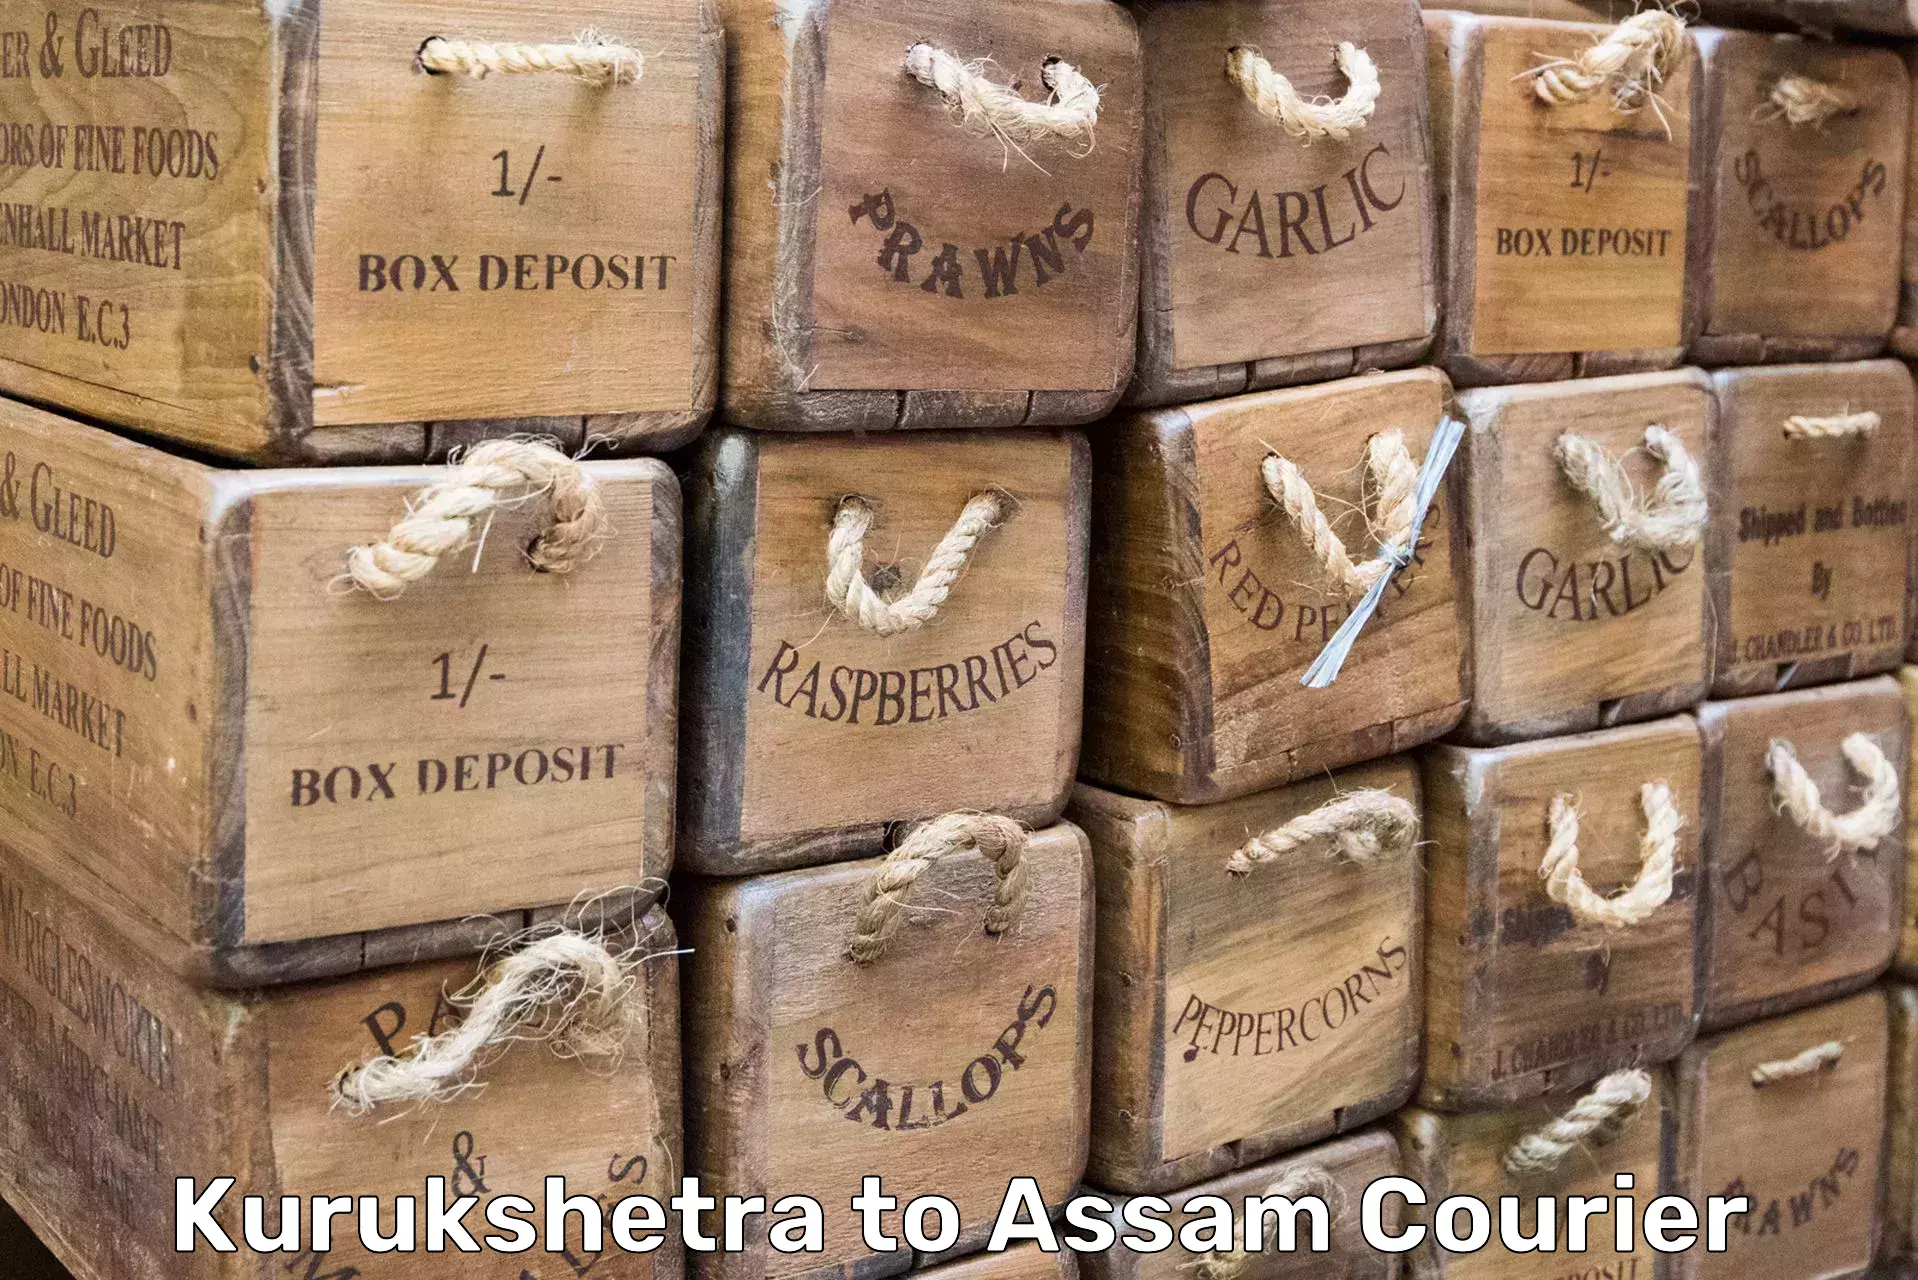 Reliable goods transport Kurukshetra to Lala Assam